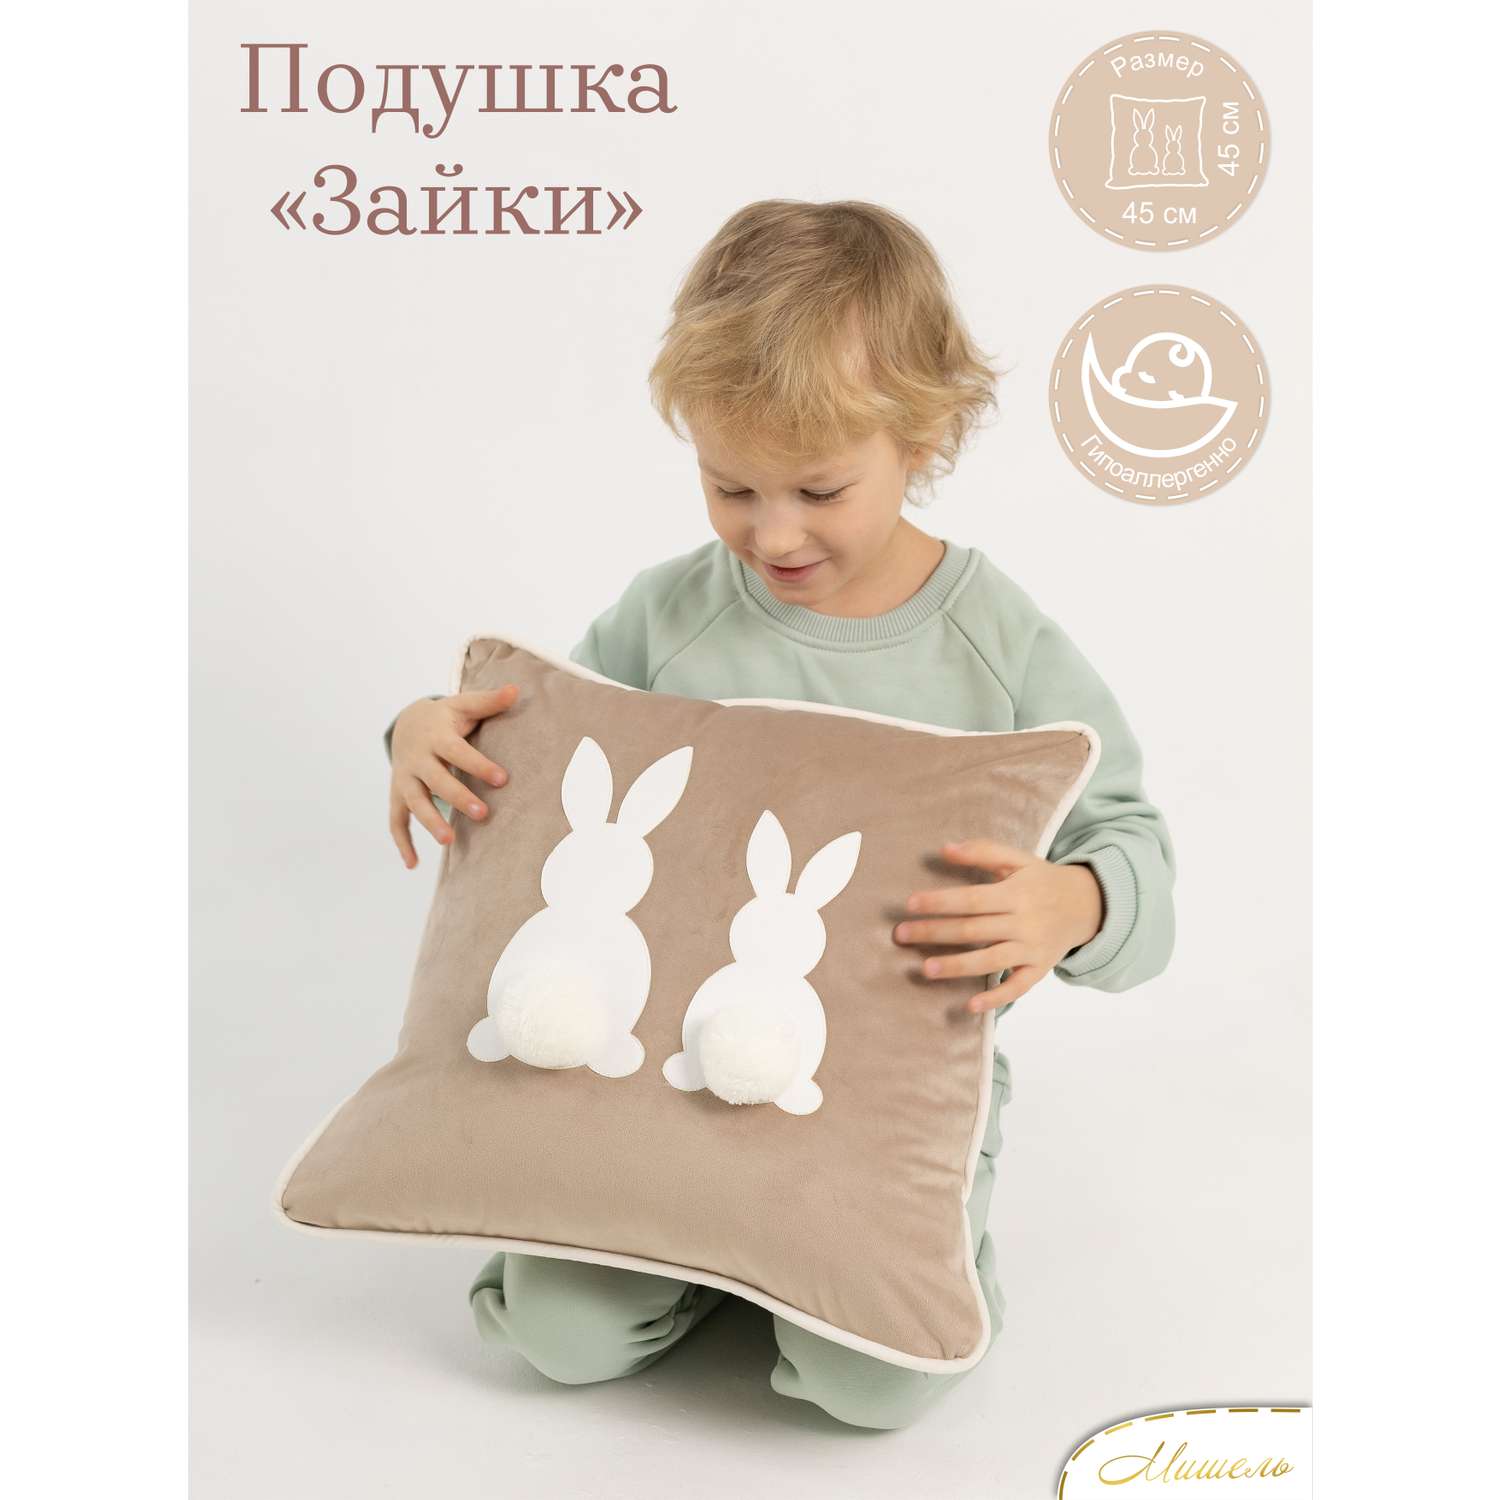 Подушка декоративная детская Мишель Зайки бежевый цвет - фото 1